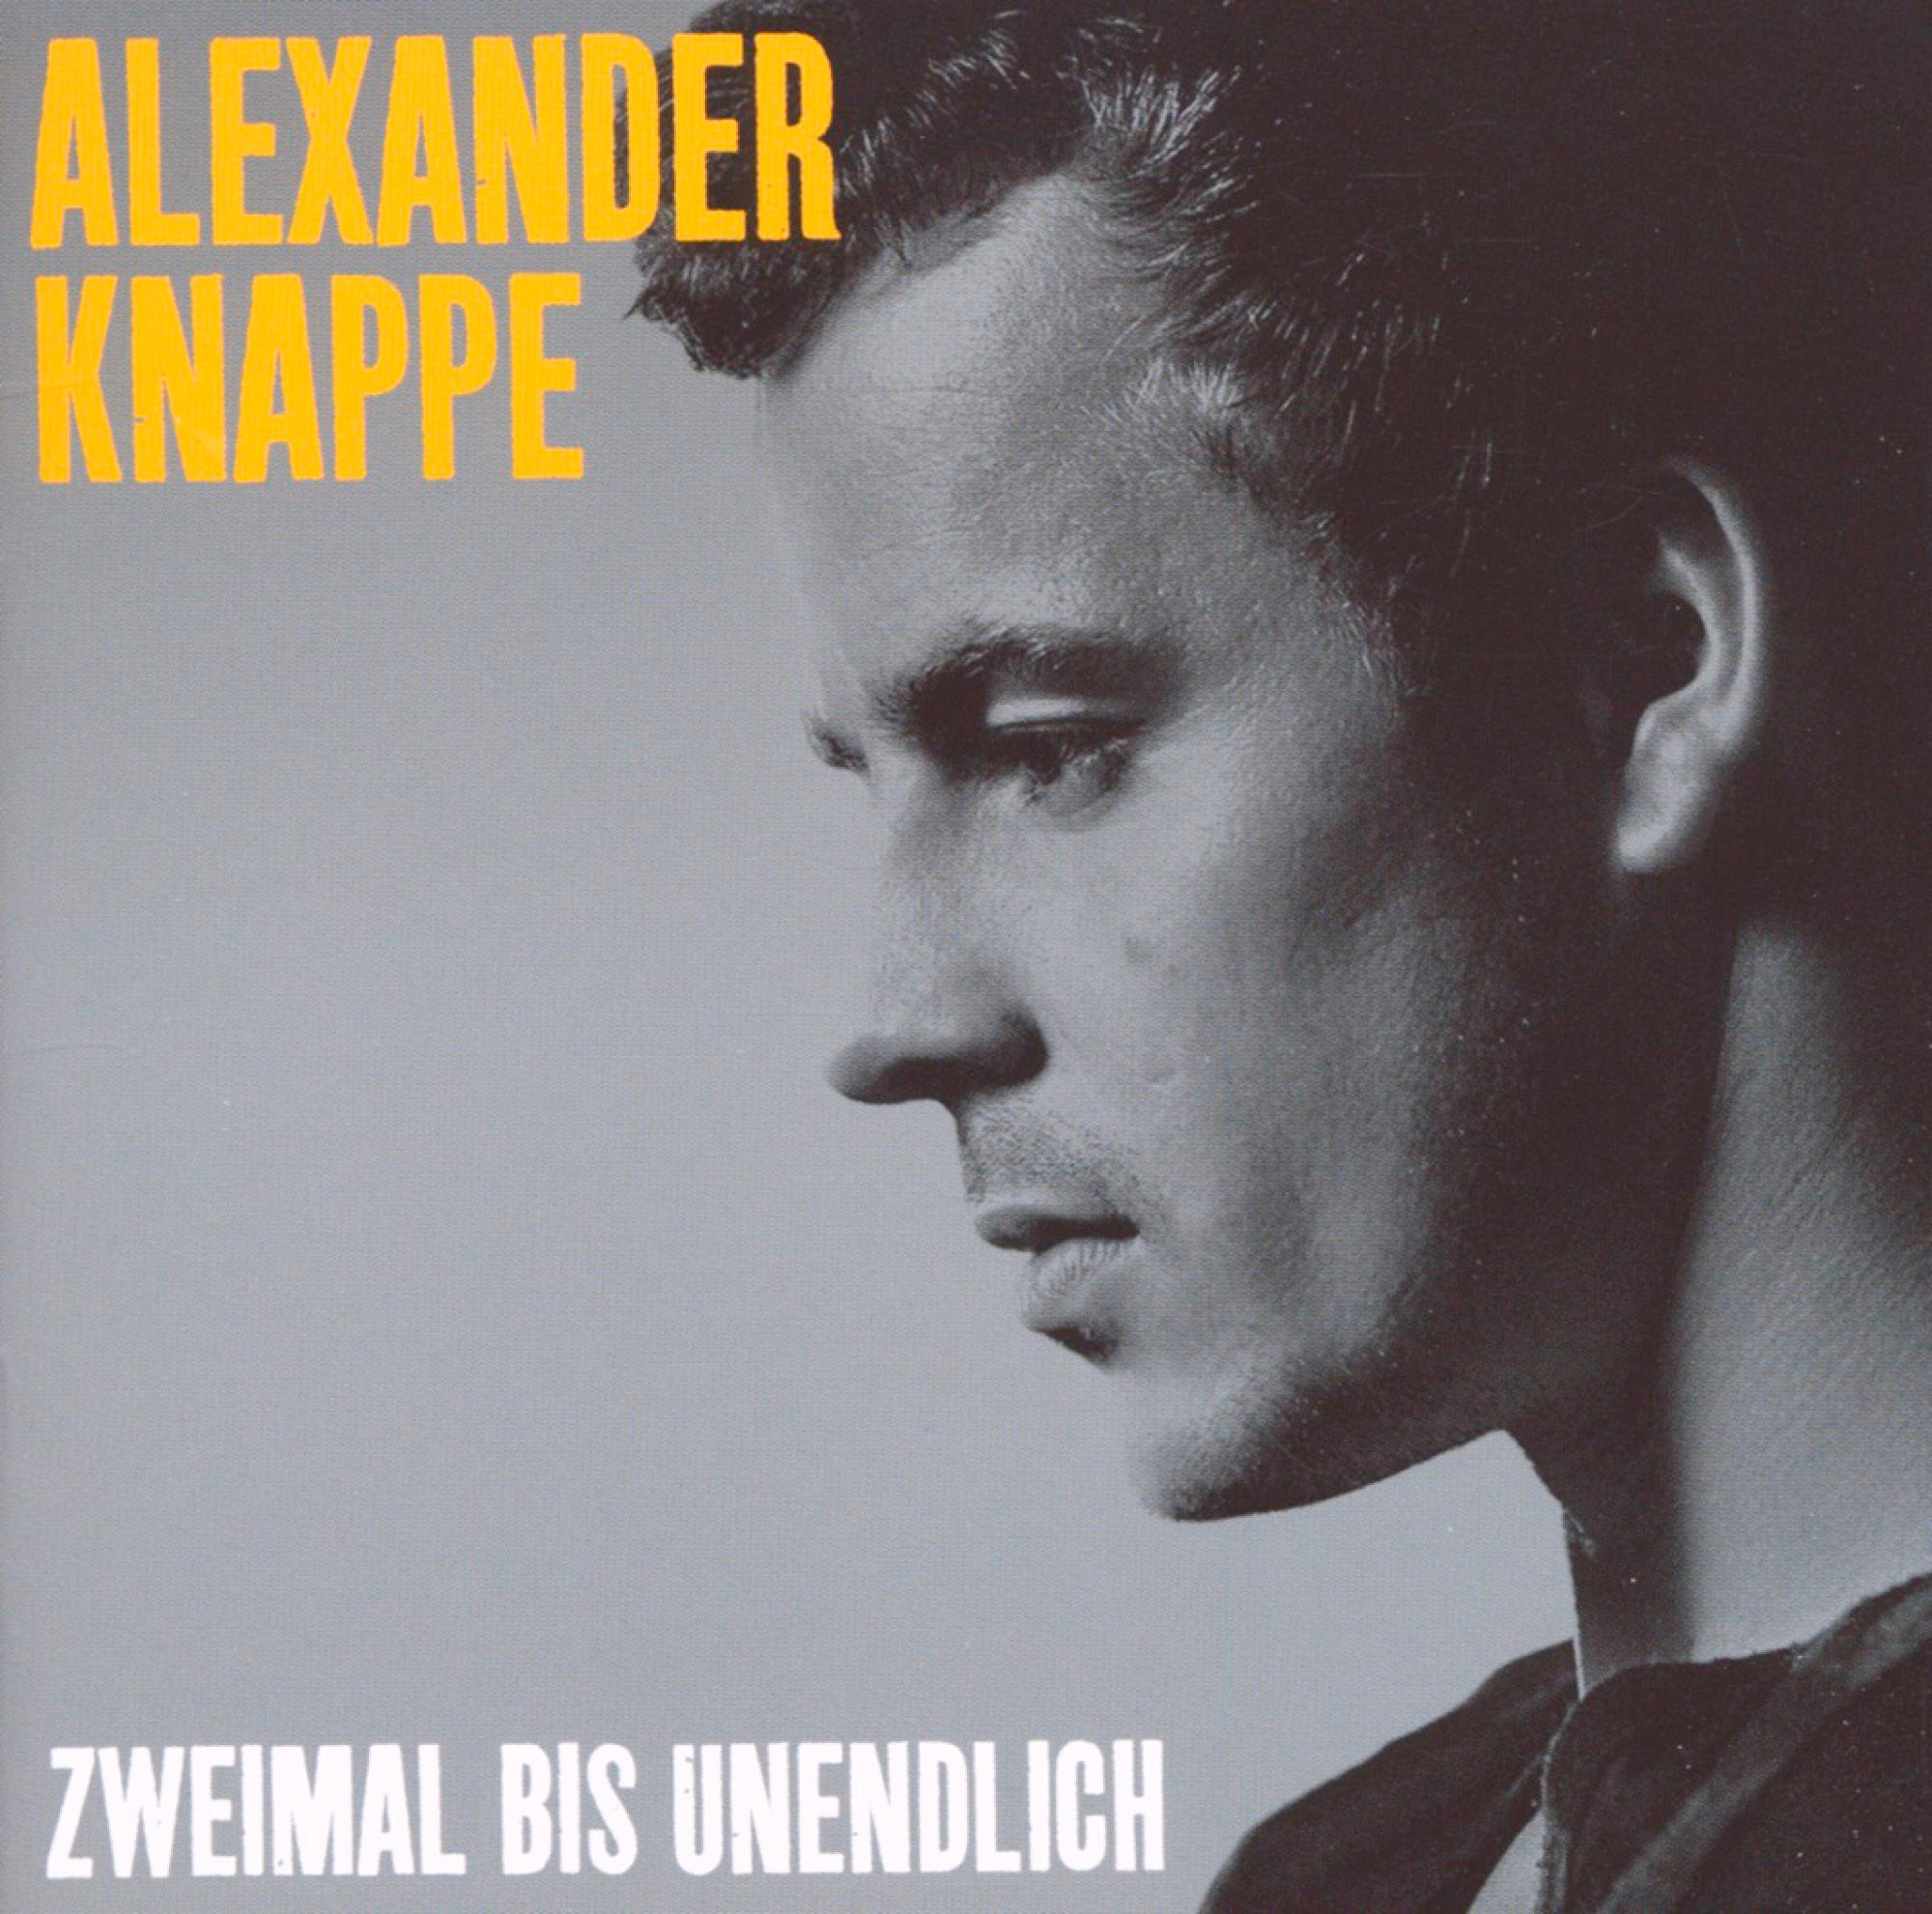 - (CD) Alexander Bis - Knappe Zweimal Unendlich